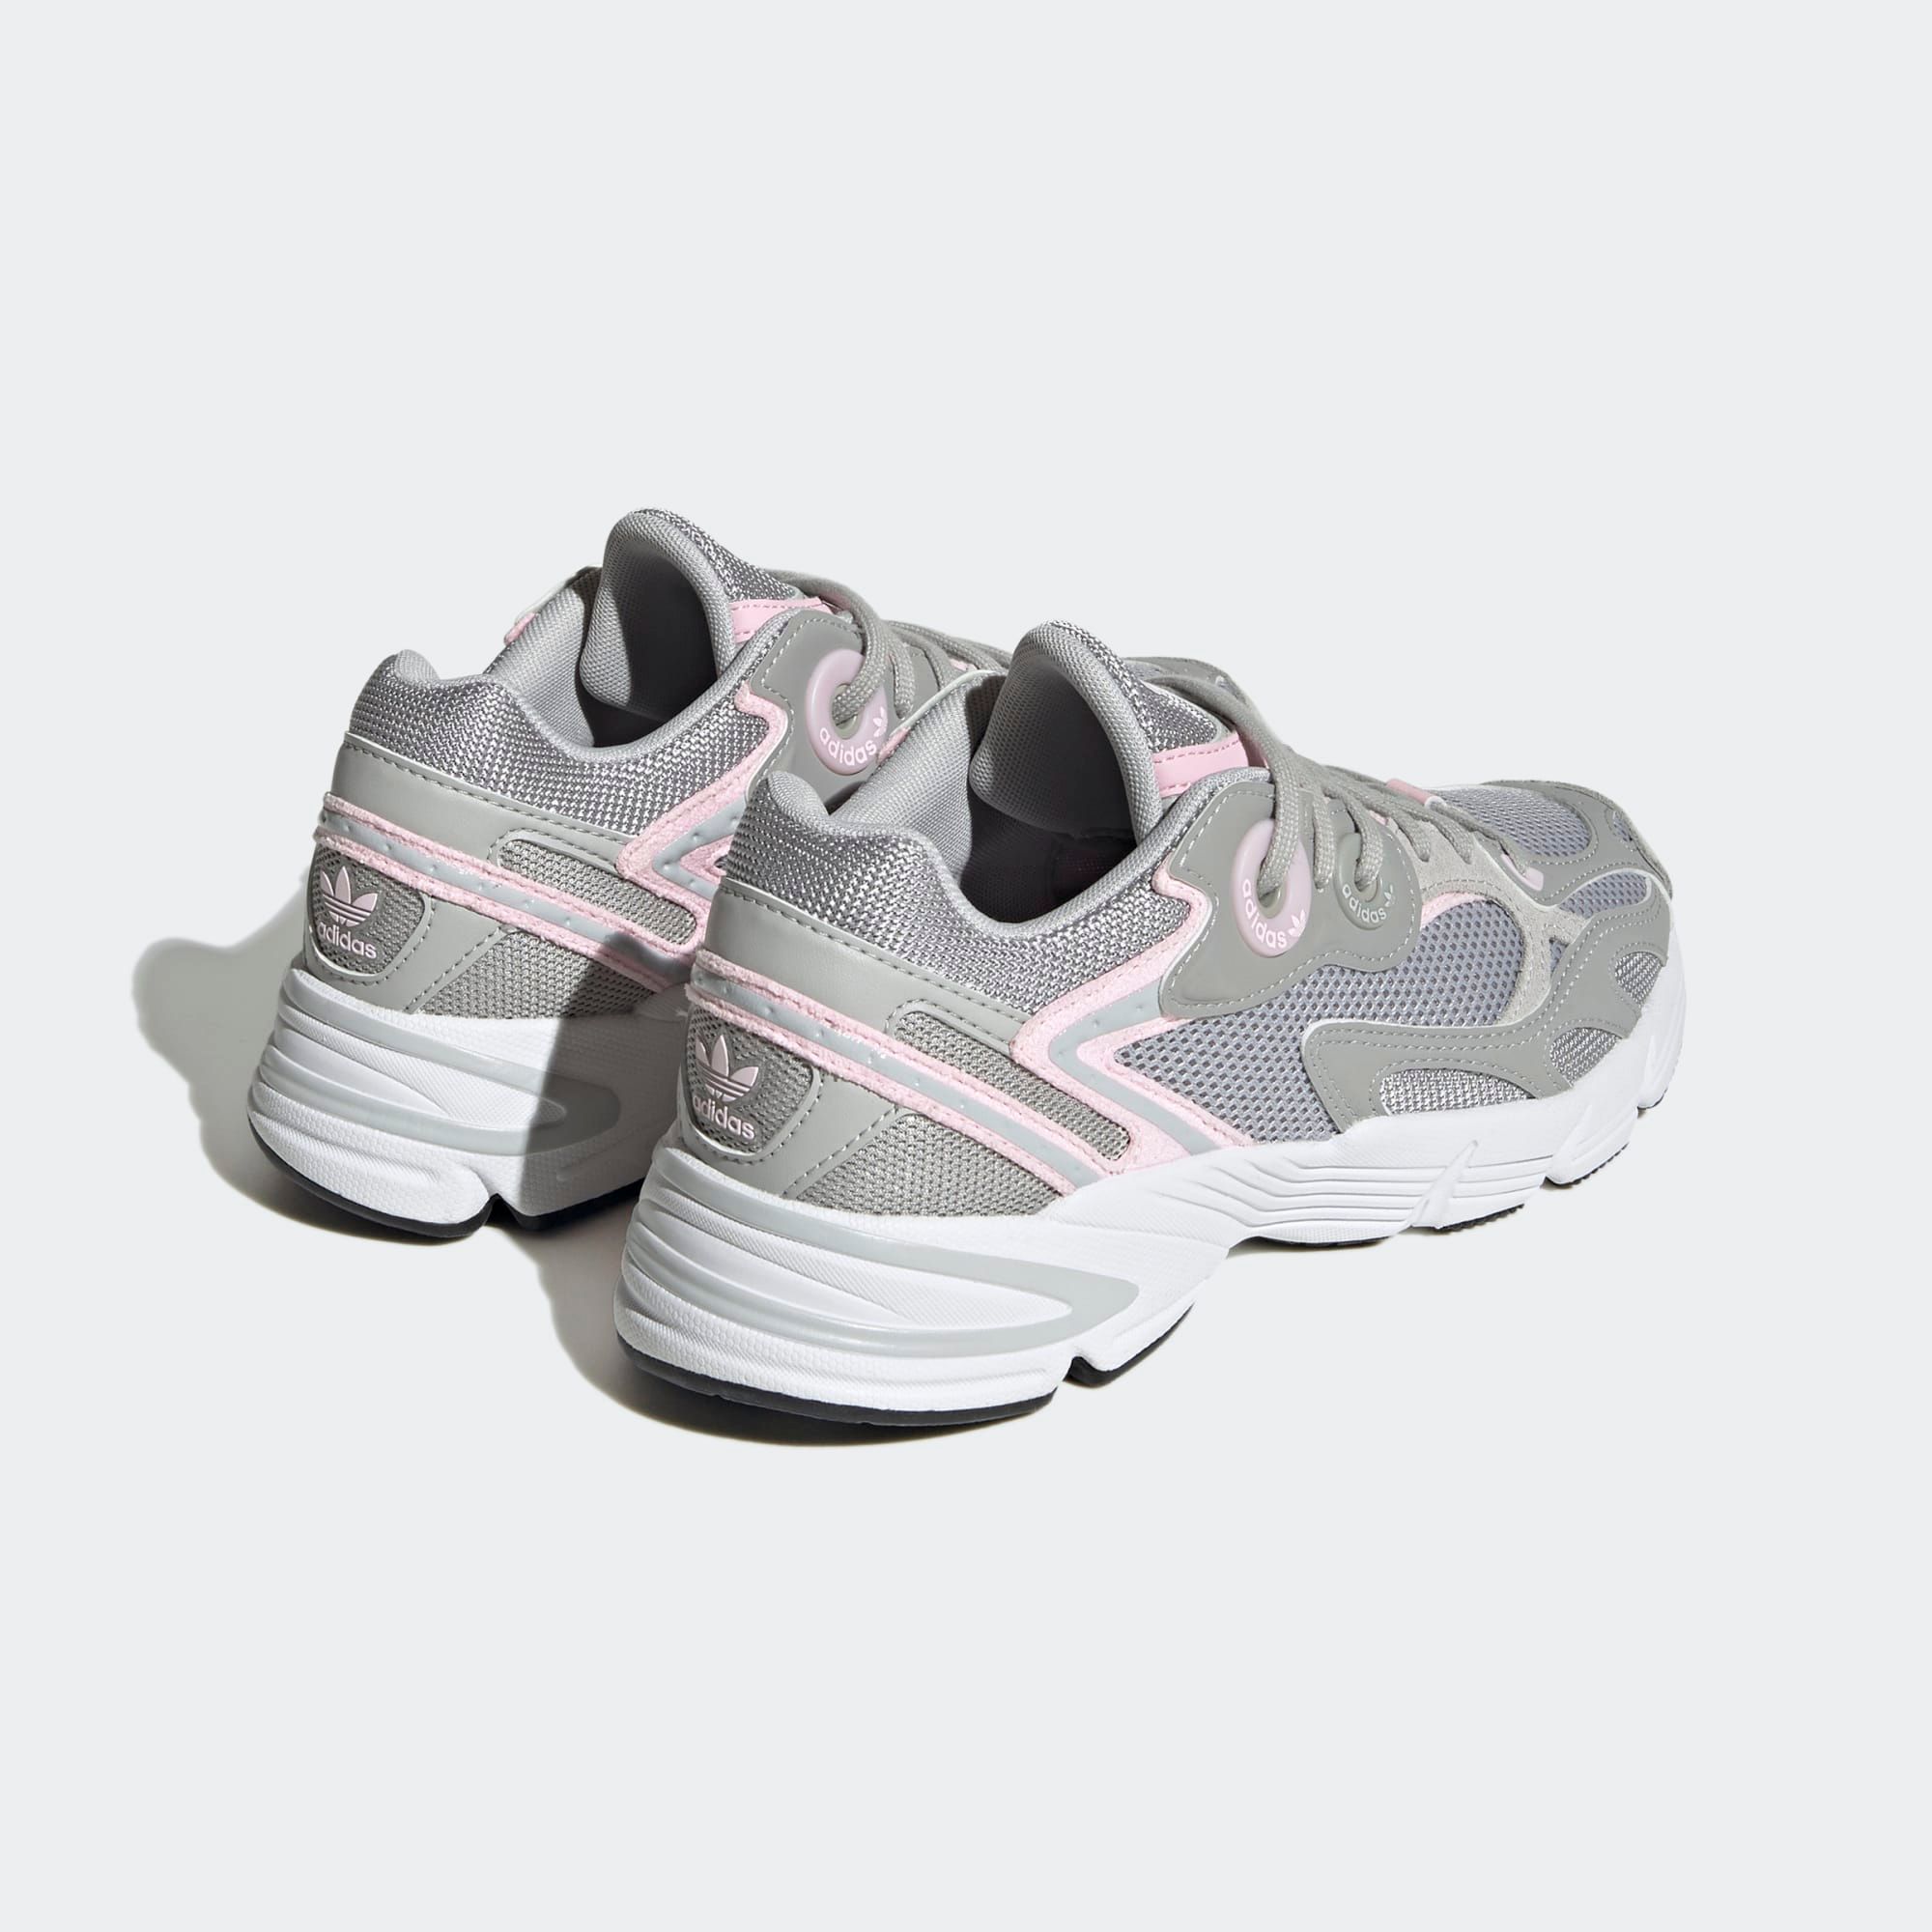  adidas Astir - Grey Two / Clear Pink 